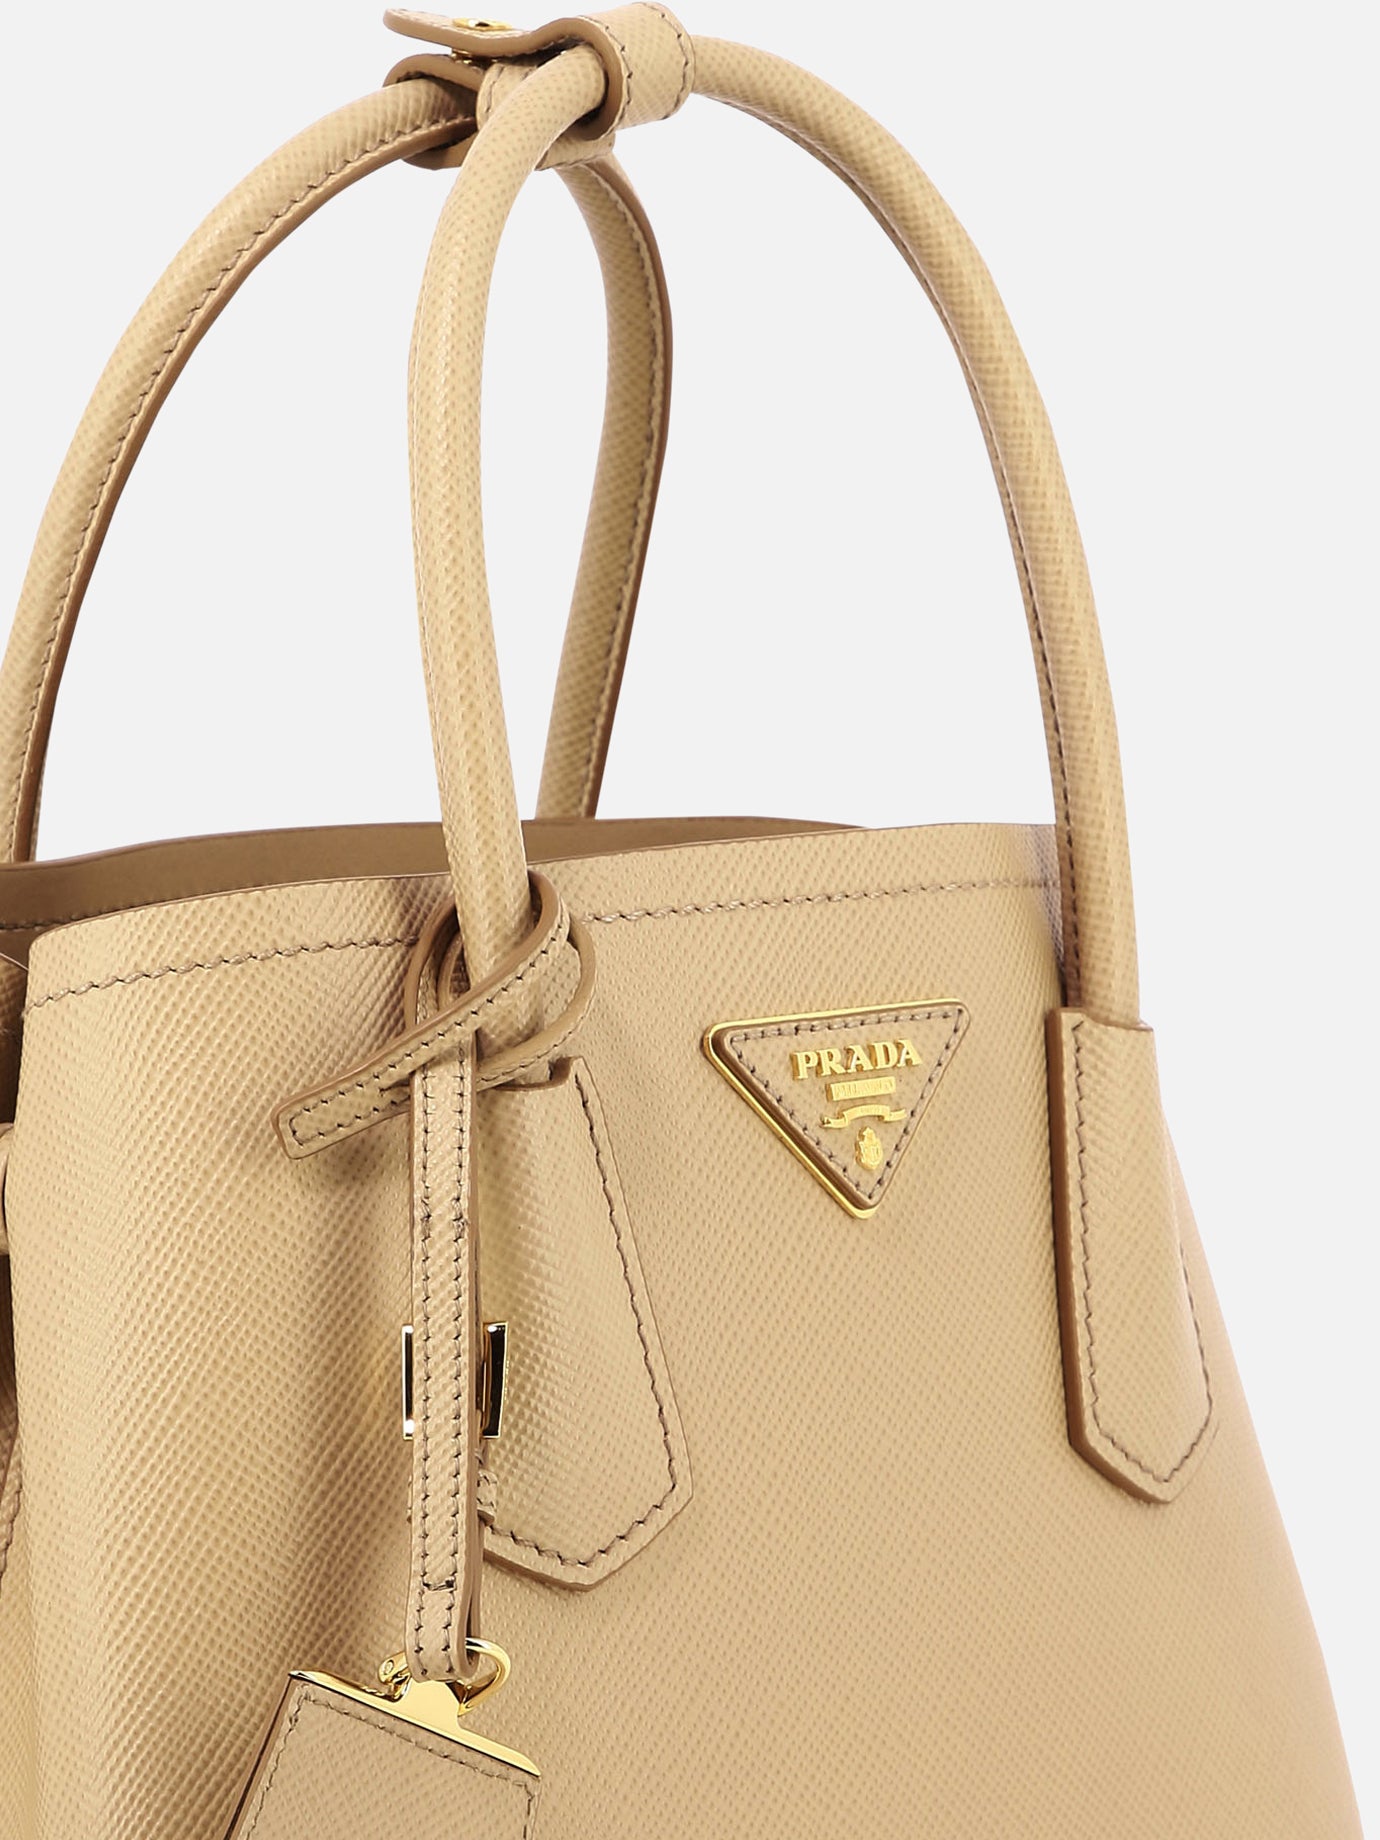 "Prada Double" Saffiano leather mini bag